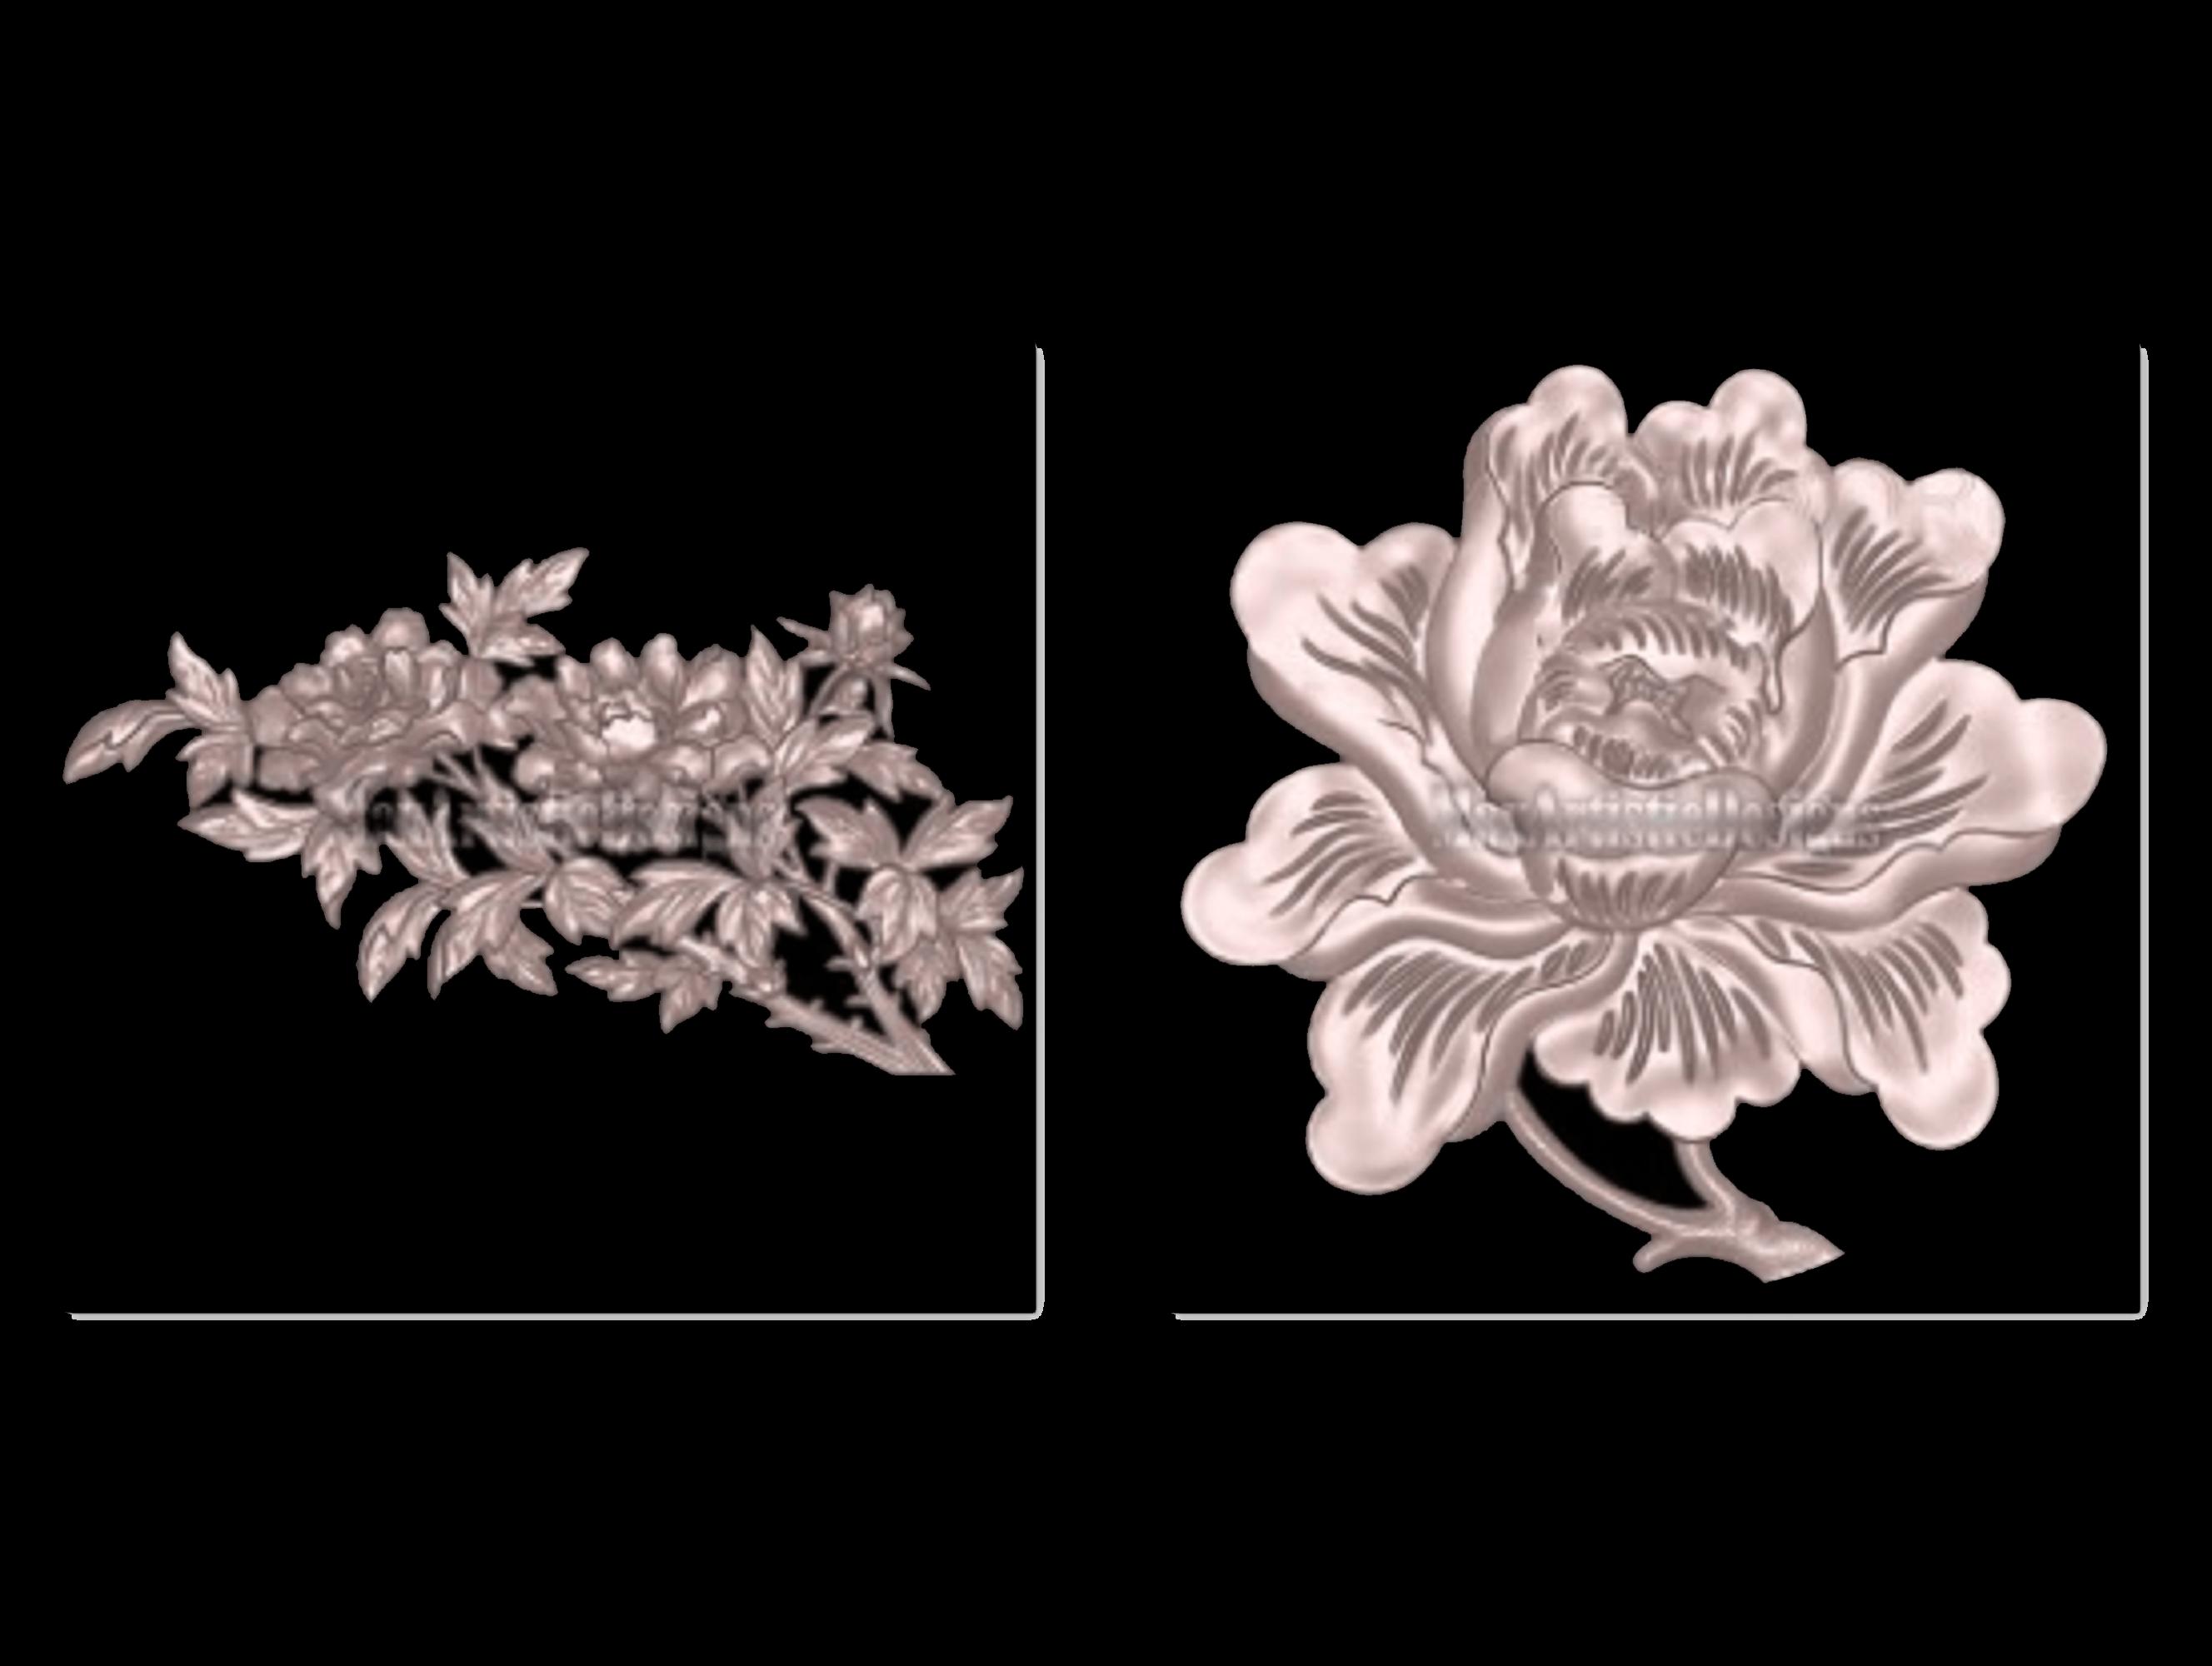 Más de 17 modelos 3d de rosas y flores para relieve stl, enrutador cnc, aspire, descarga digital de impresora 3d